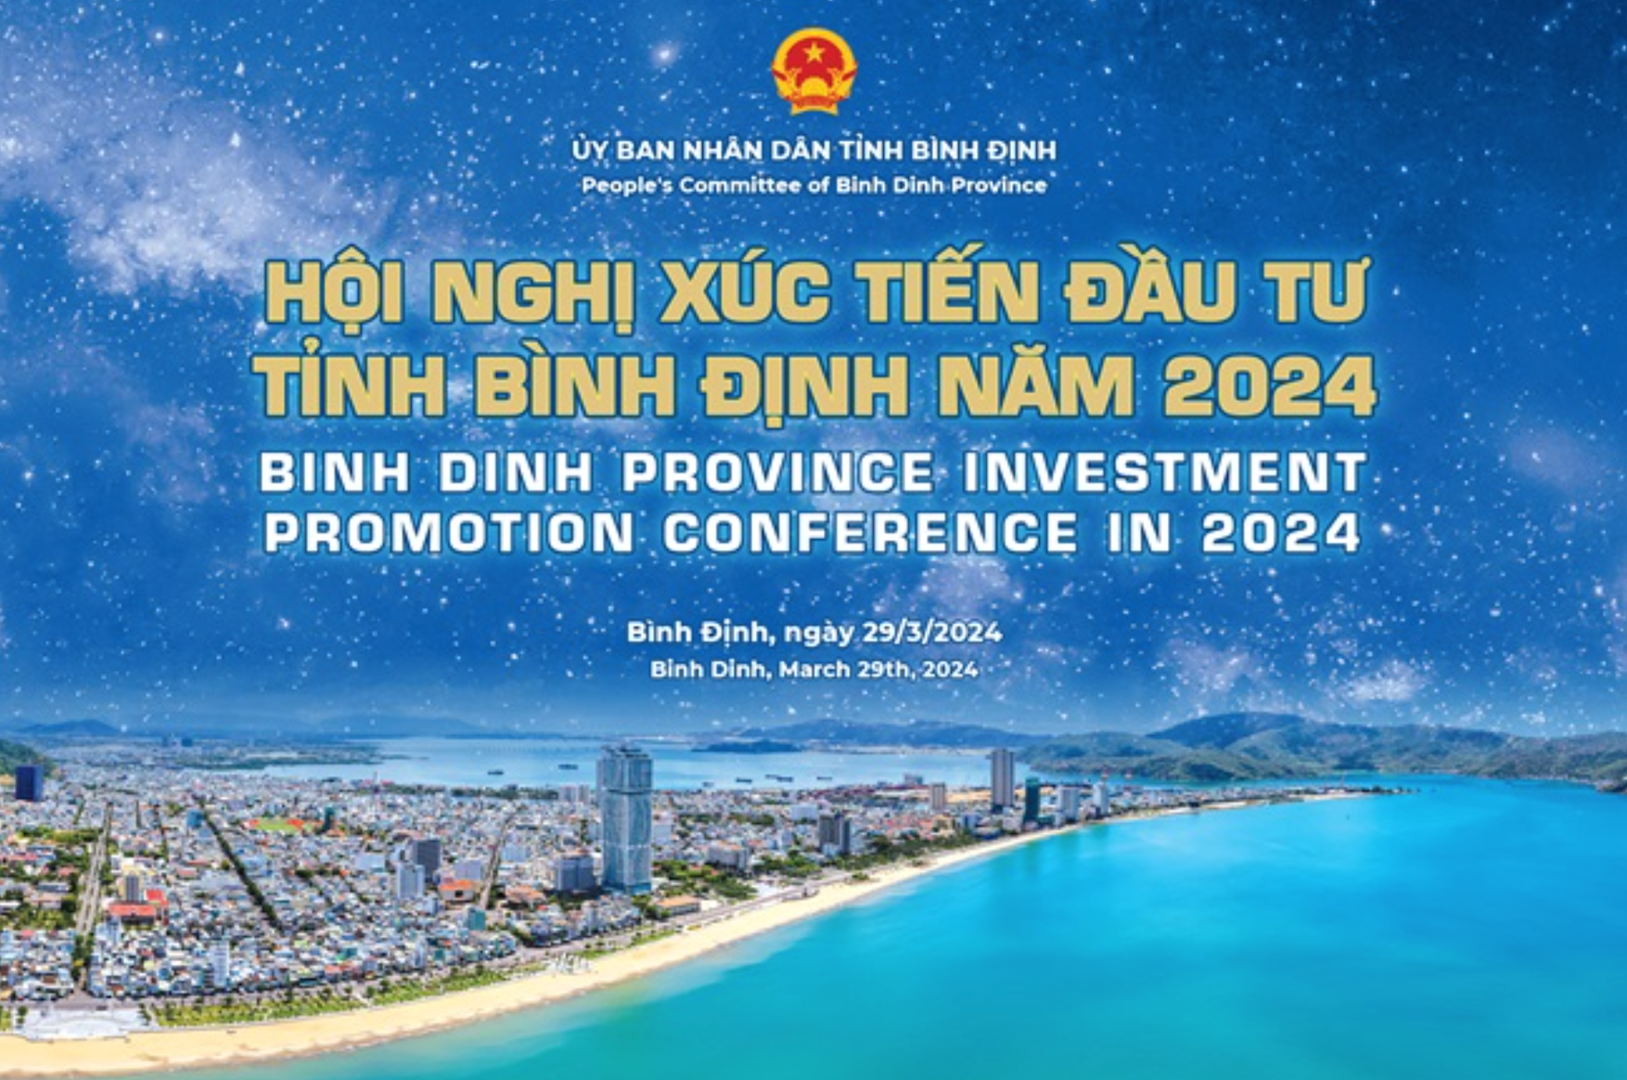 Hơn 1.000 đại biểu dự Hội nghị xúc tiến đầu tư tỉnh Bình Định năm 2024